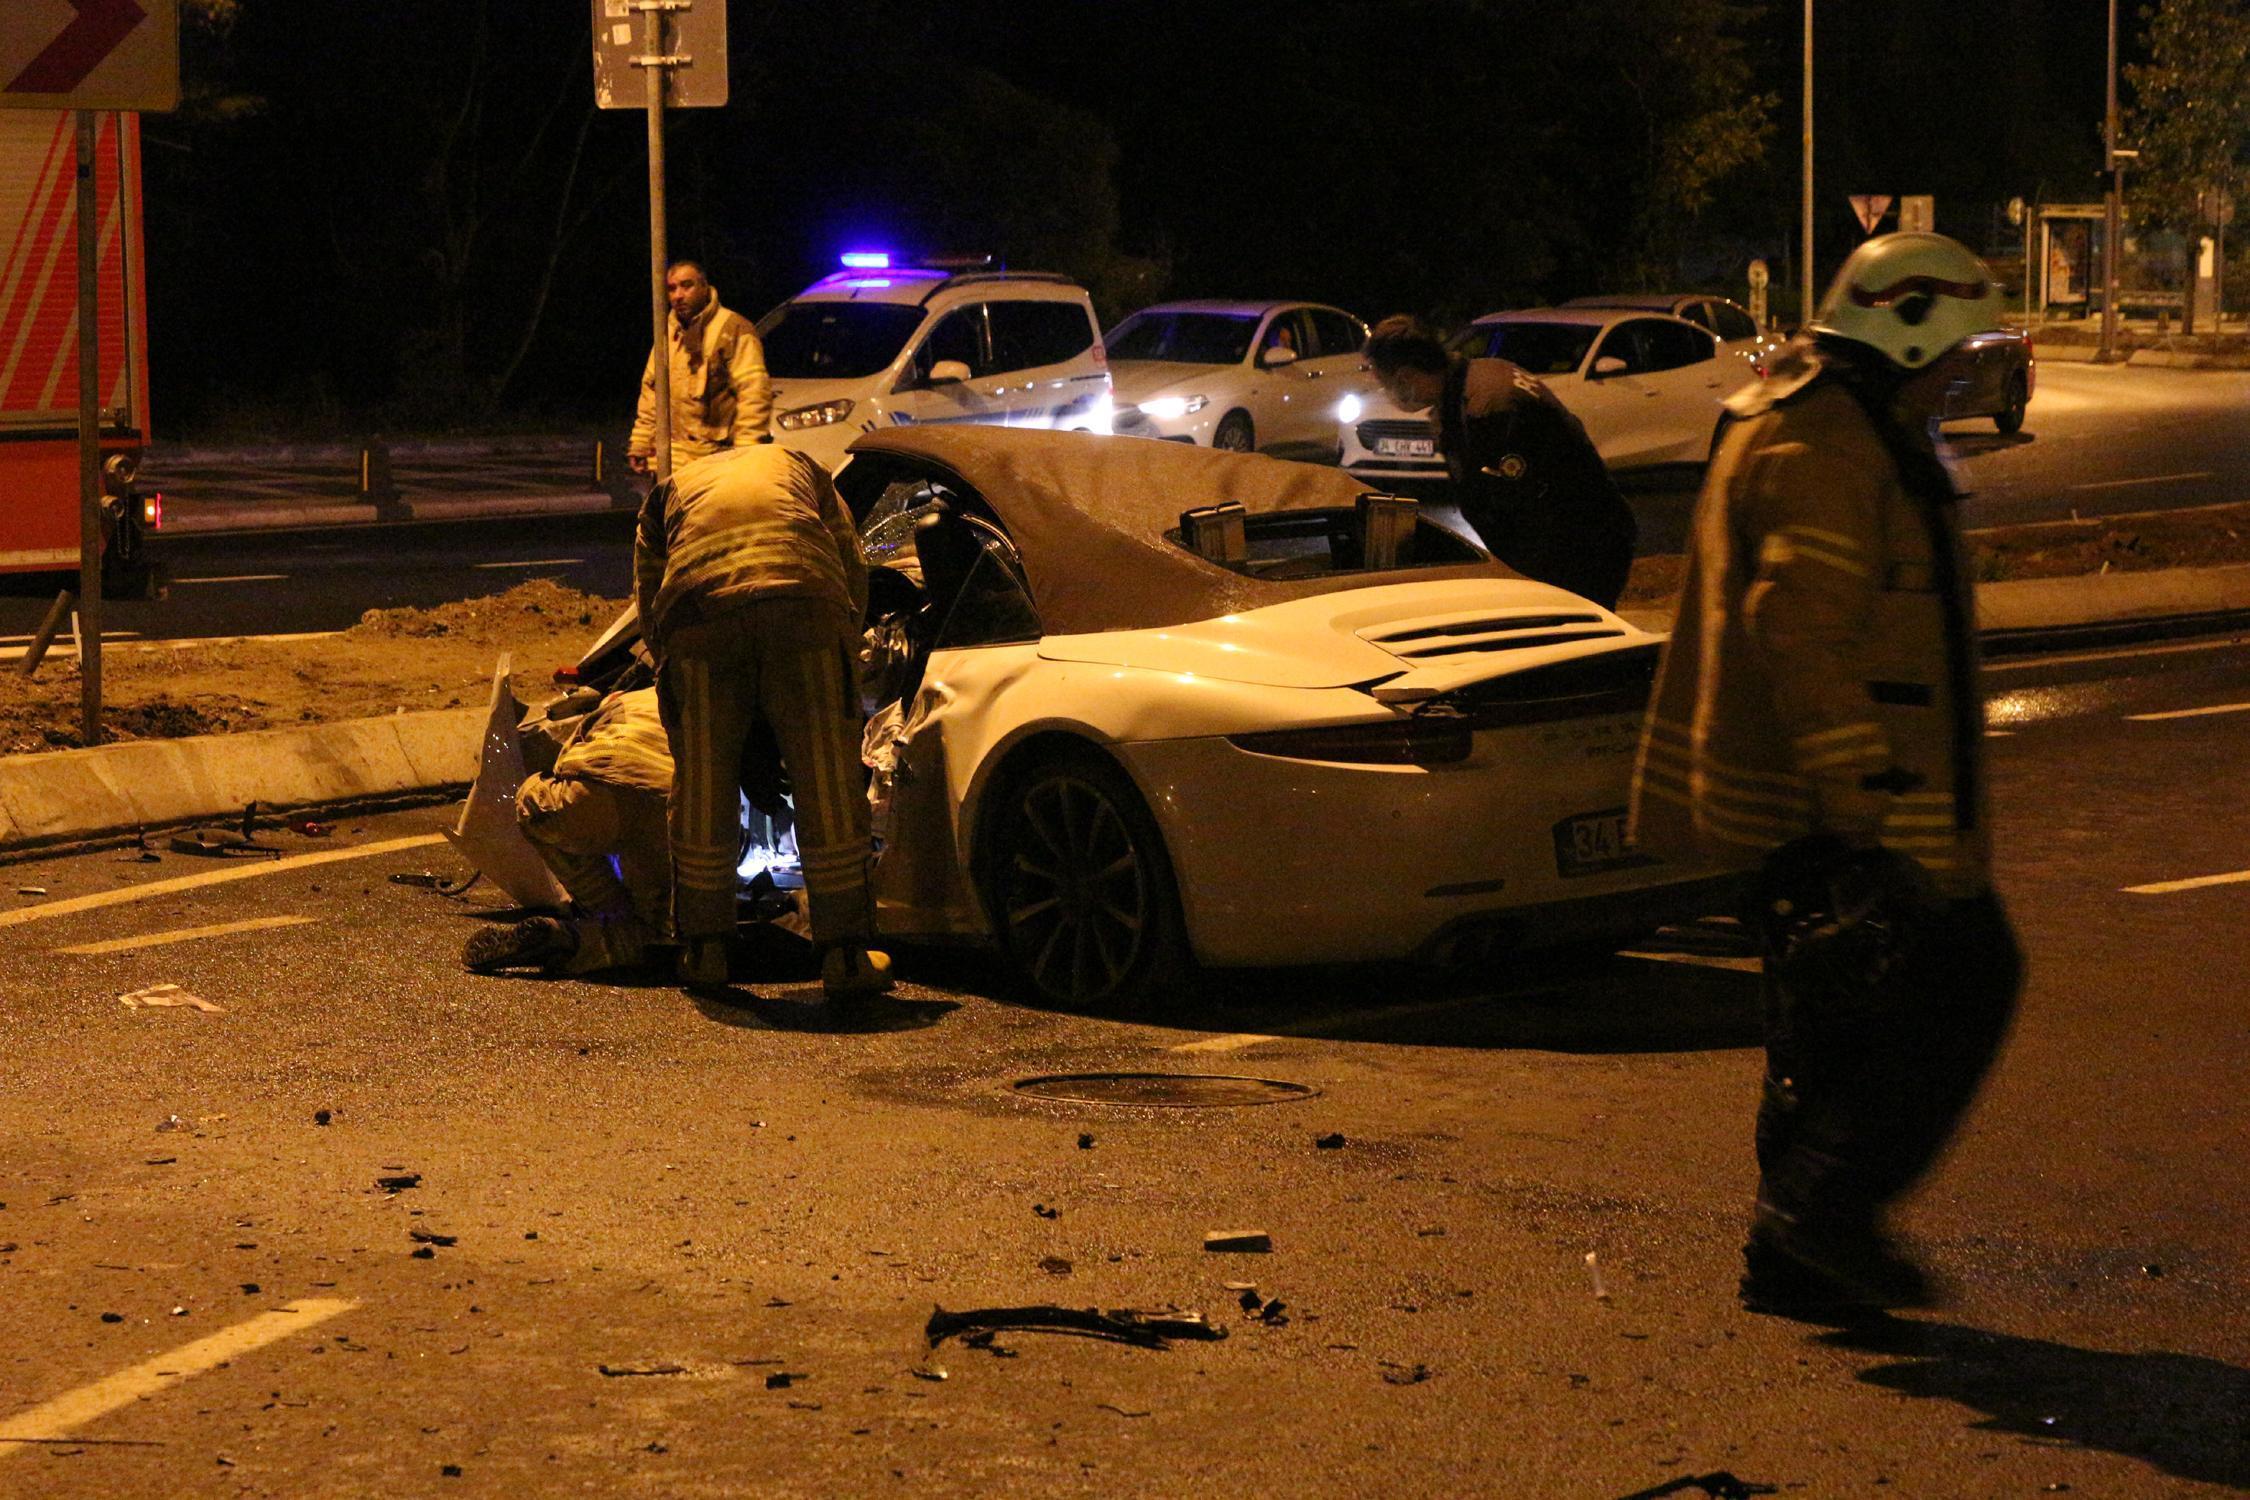 Sarıyerde aşırı hızlı lüks otomobil elektrik direğine çarptı: 3 ağır yaralı